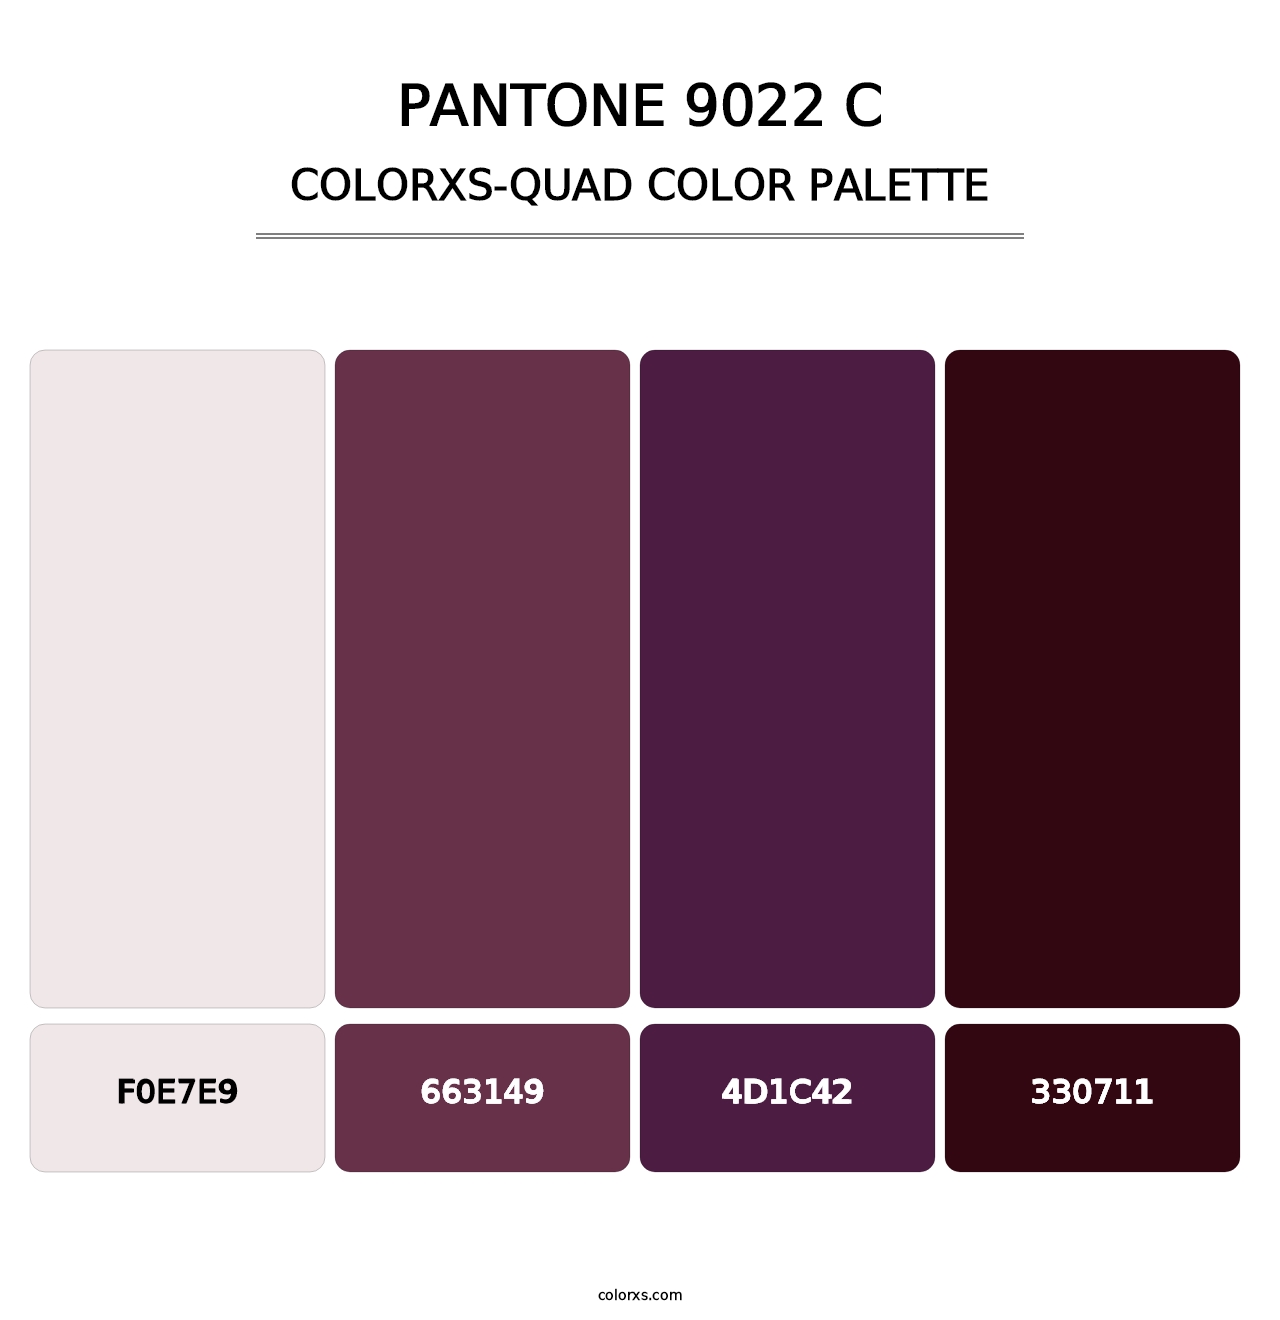 PANTONE 9022 C - Colorxs Quad Palette